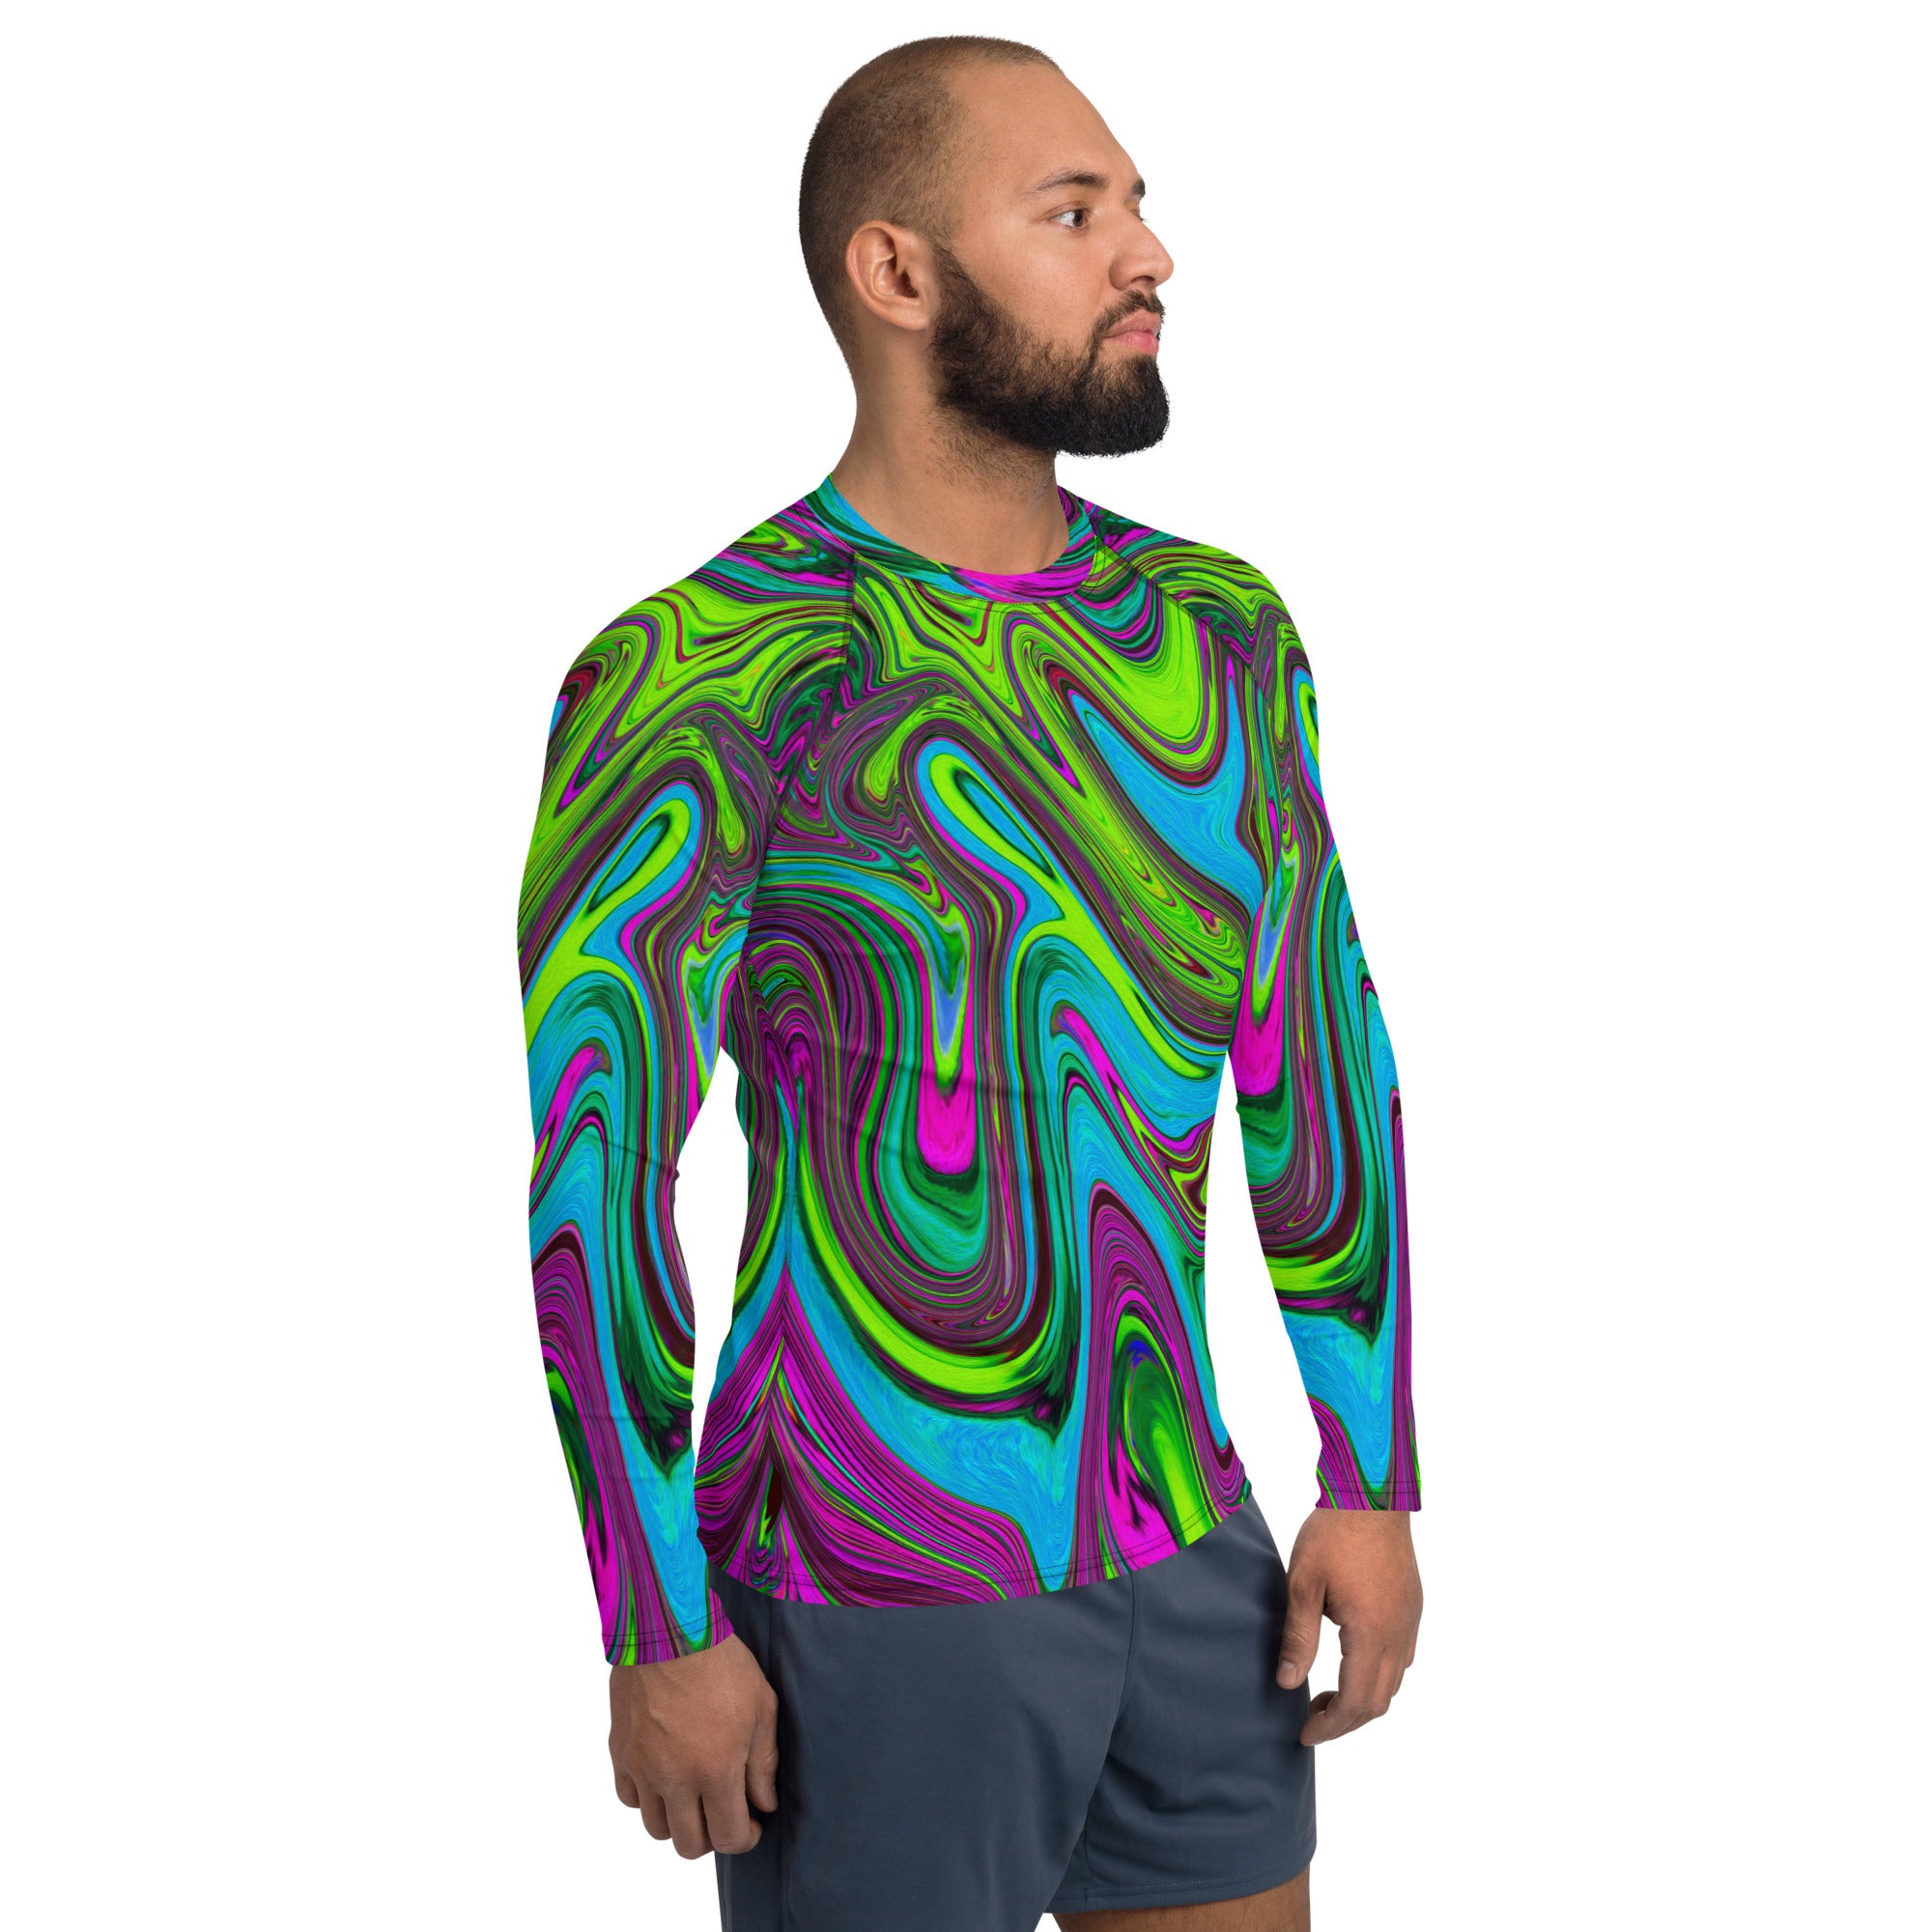 Men's Athletic Rash Guard Shirts - Wavy Green, Blue and Magenta Abstract Art